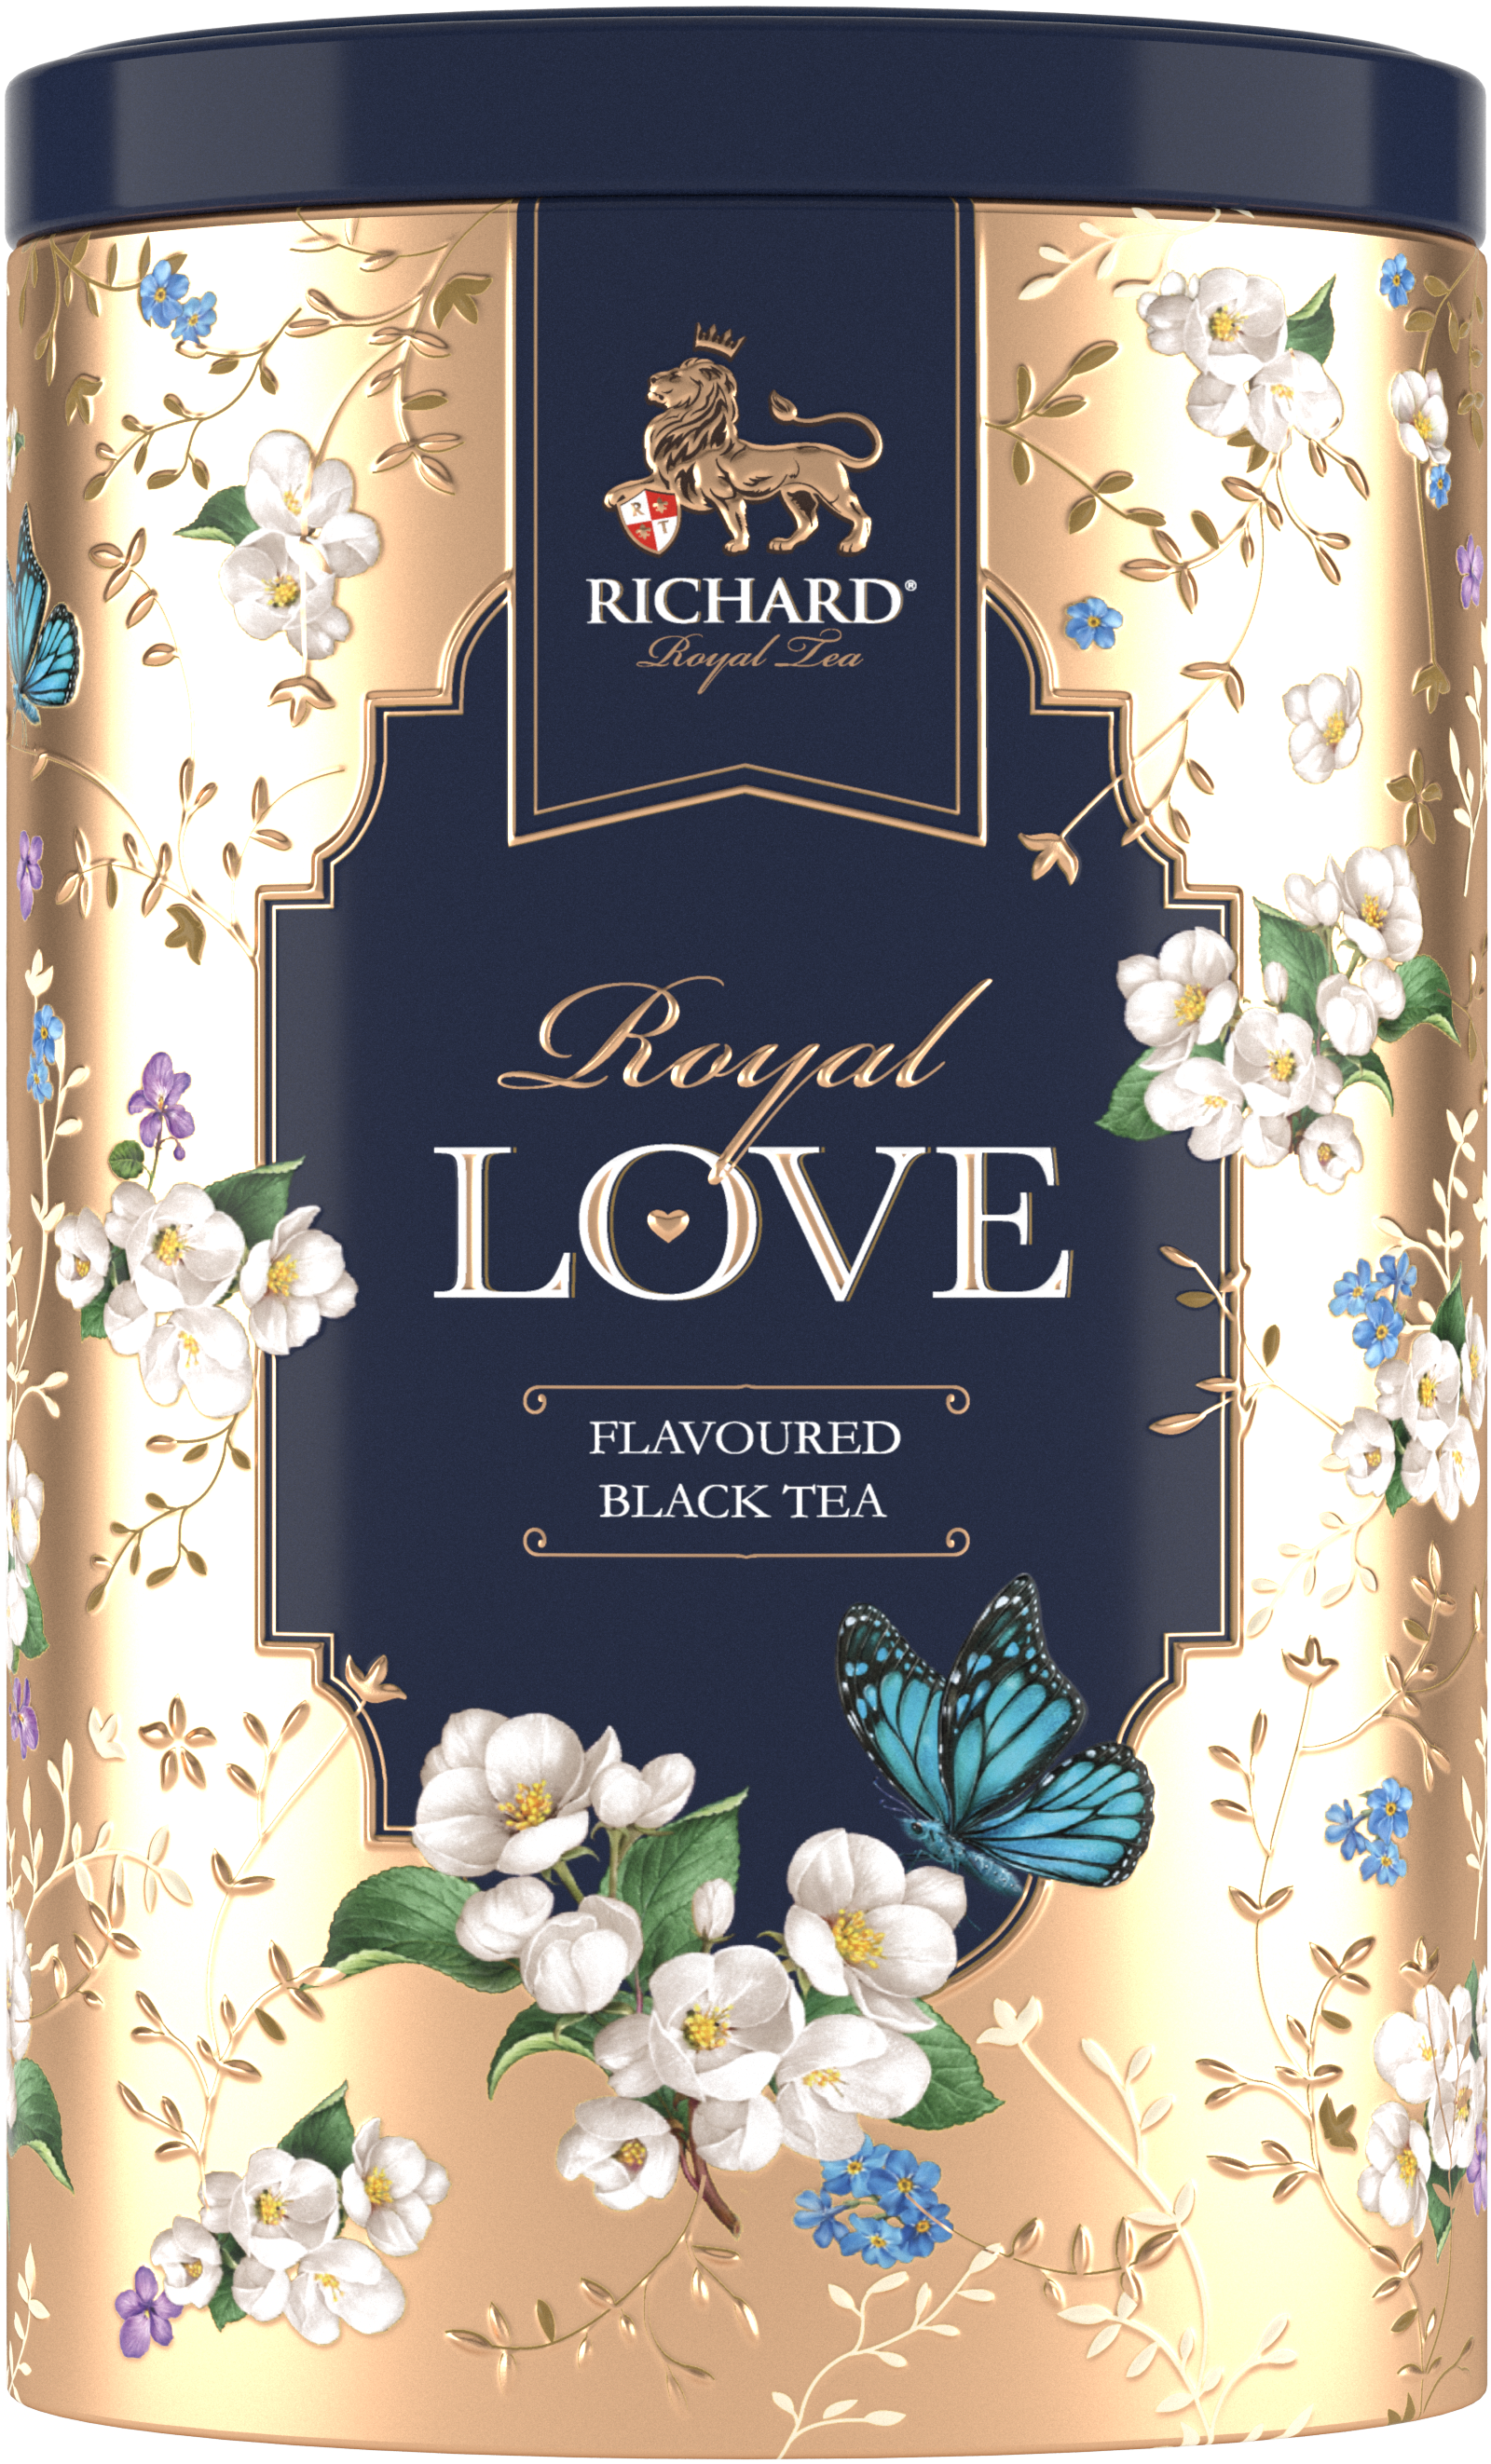 Royal Szerelem ízesített fekete tea, szálas, 80g GOLD fémdobozban - RichardTeavn - vásároljon a 2990.00 Ft